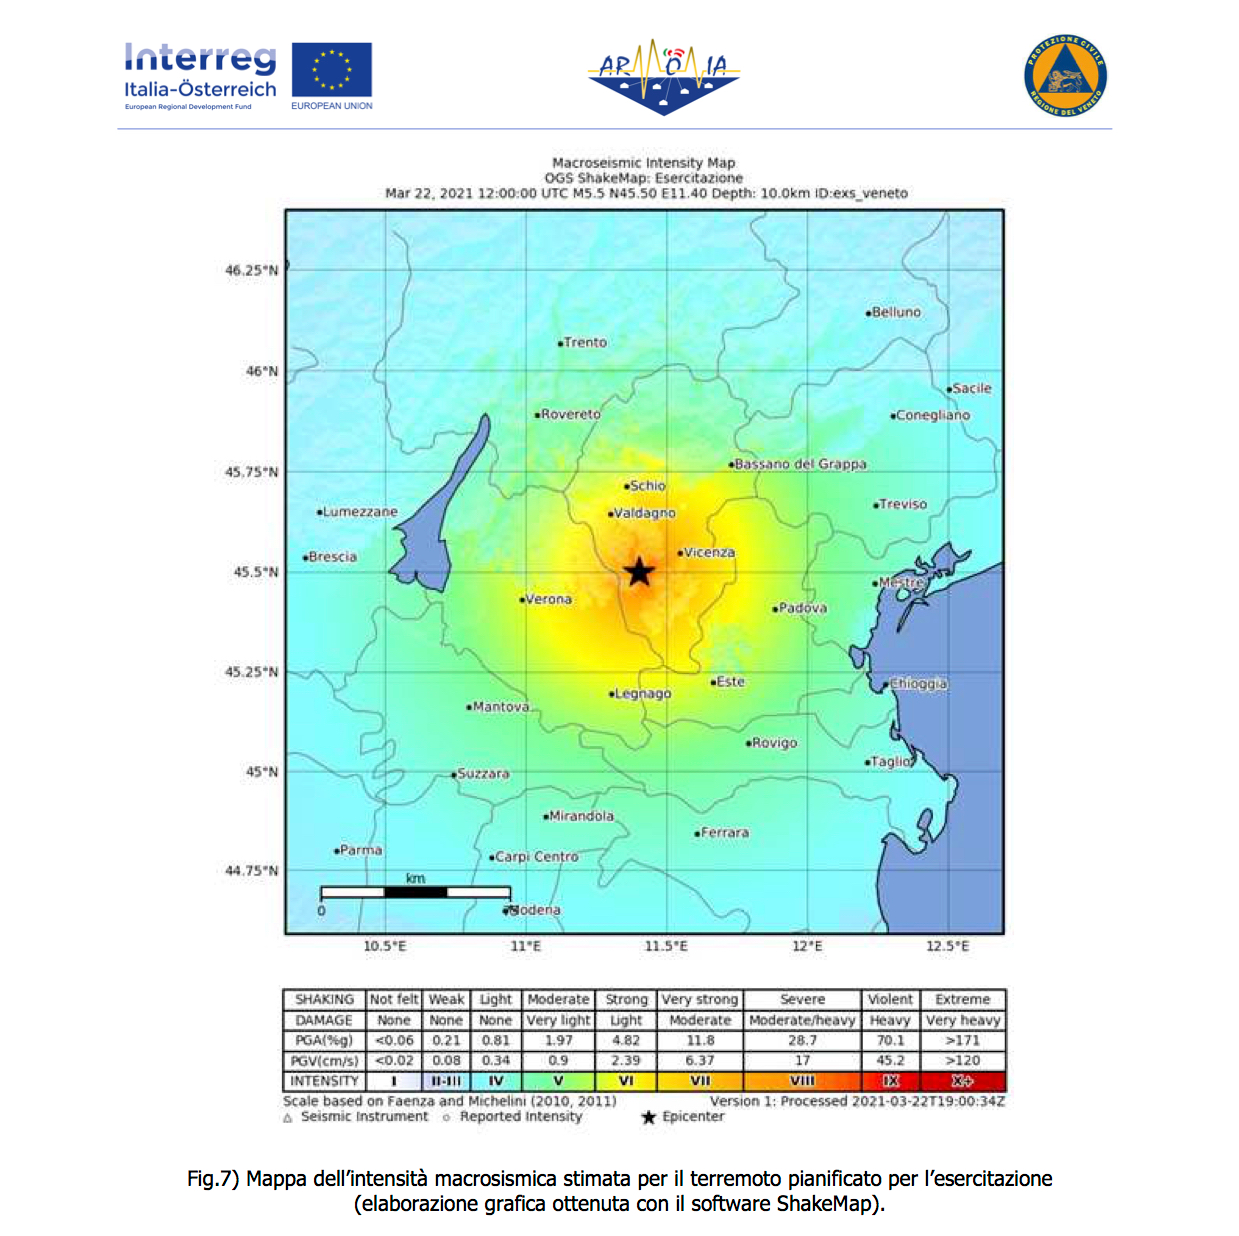 Vigili del Fuoco – Vicenza, PROGETTO ARMONIA: SismAr-VI9 – Simulazione di un evento sismico con epicentro a Montecchio Maggiore